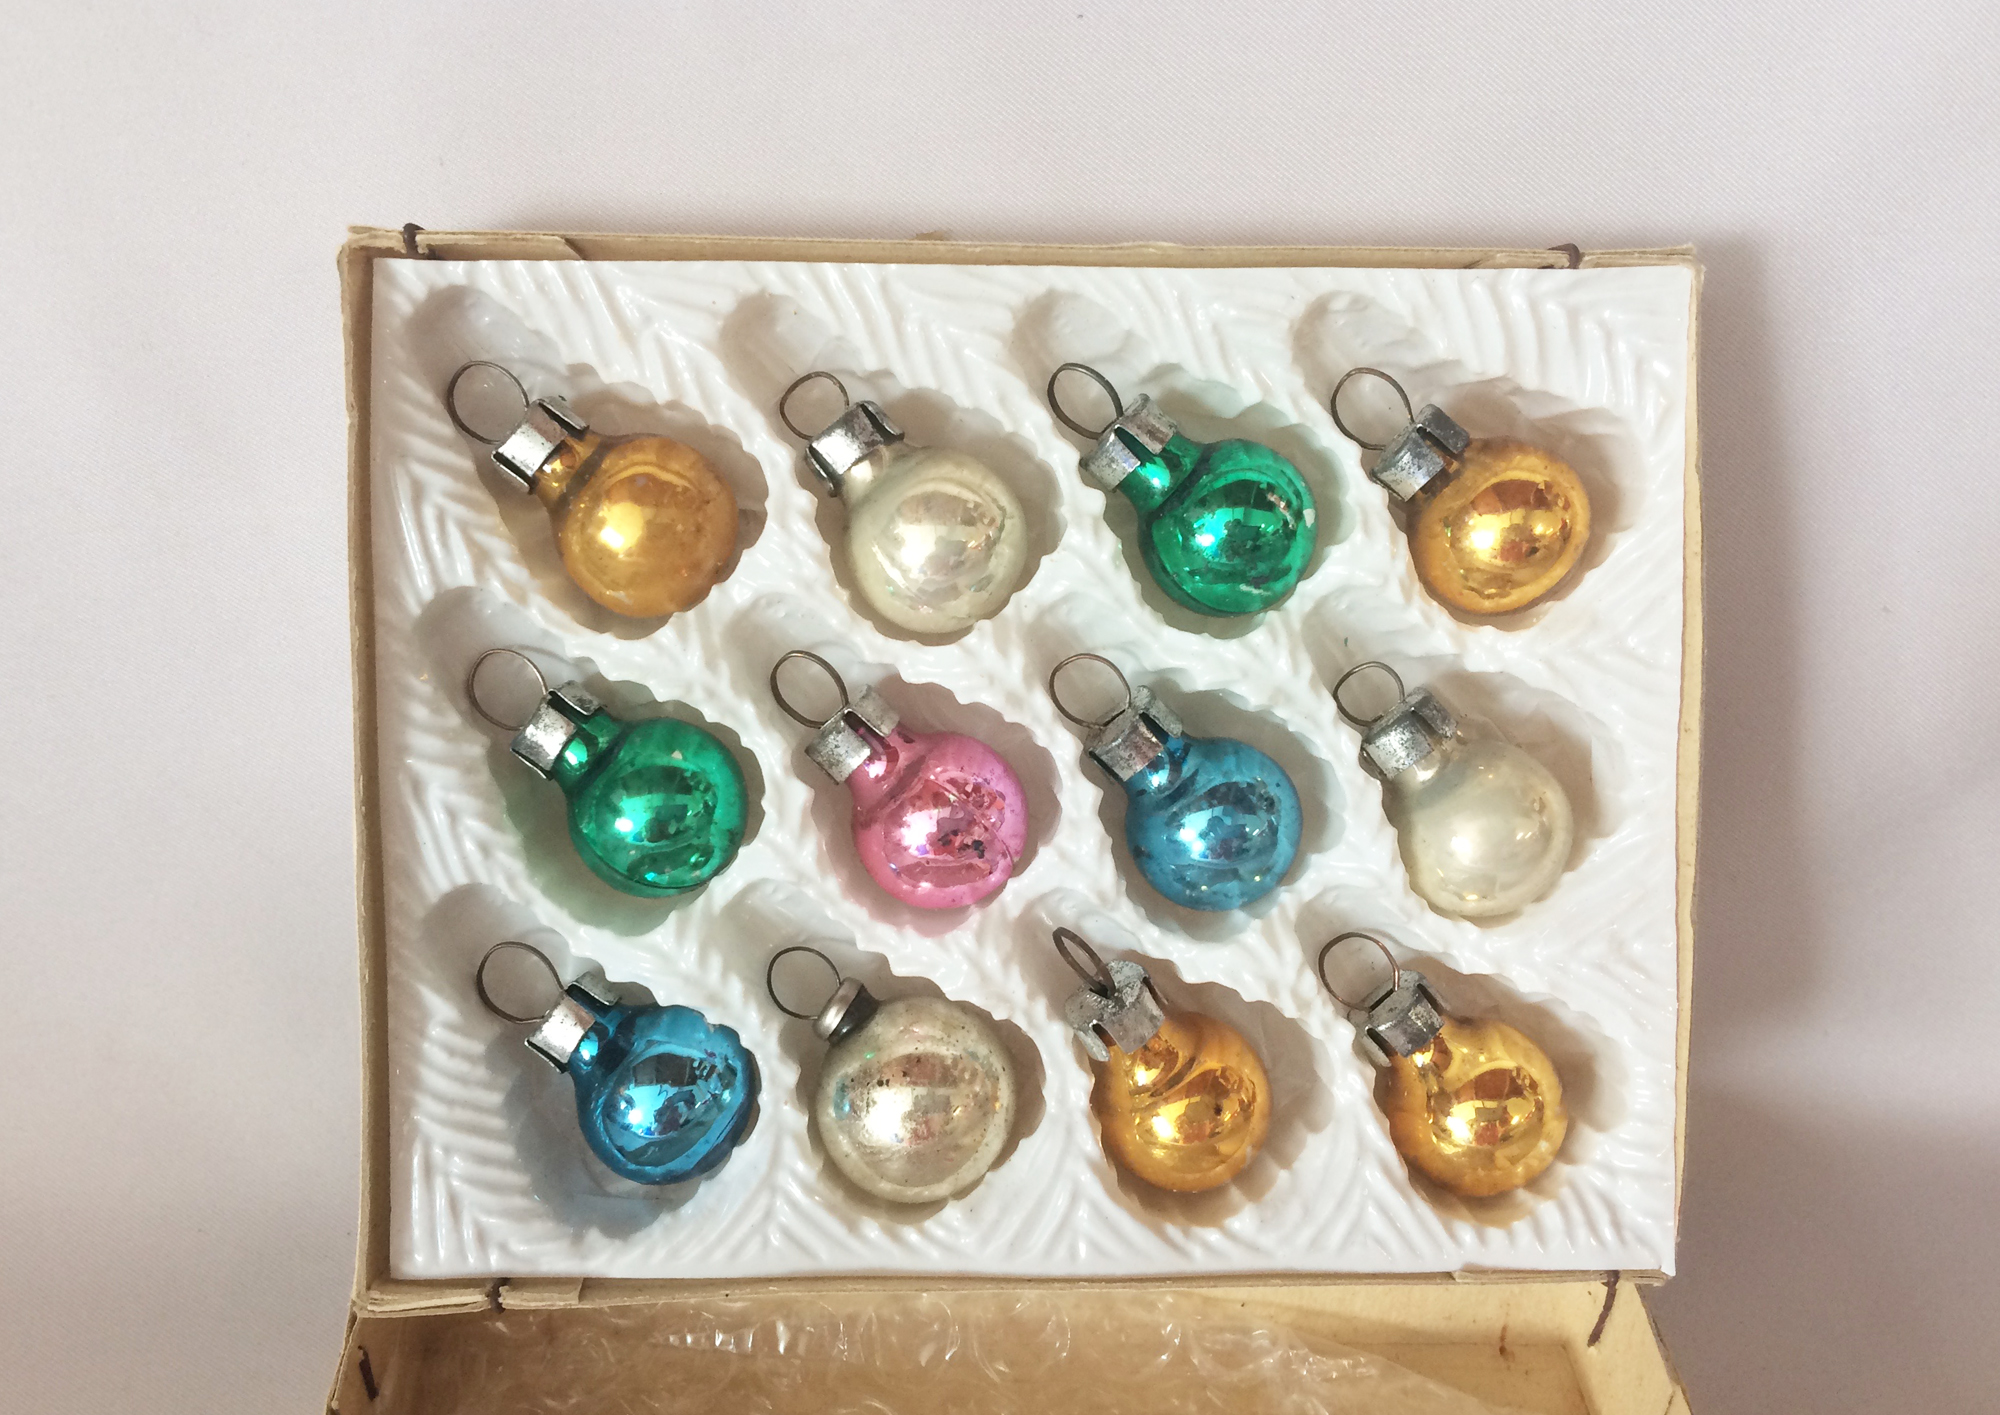 3 Sets of Vintage Miniature Teardrop Ornaments